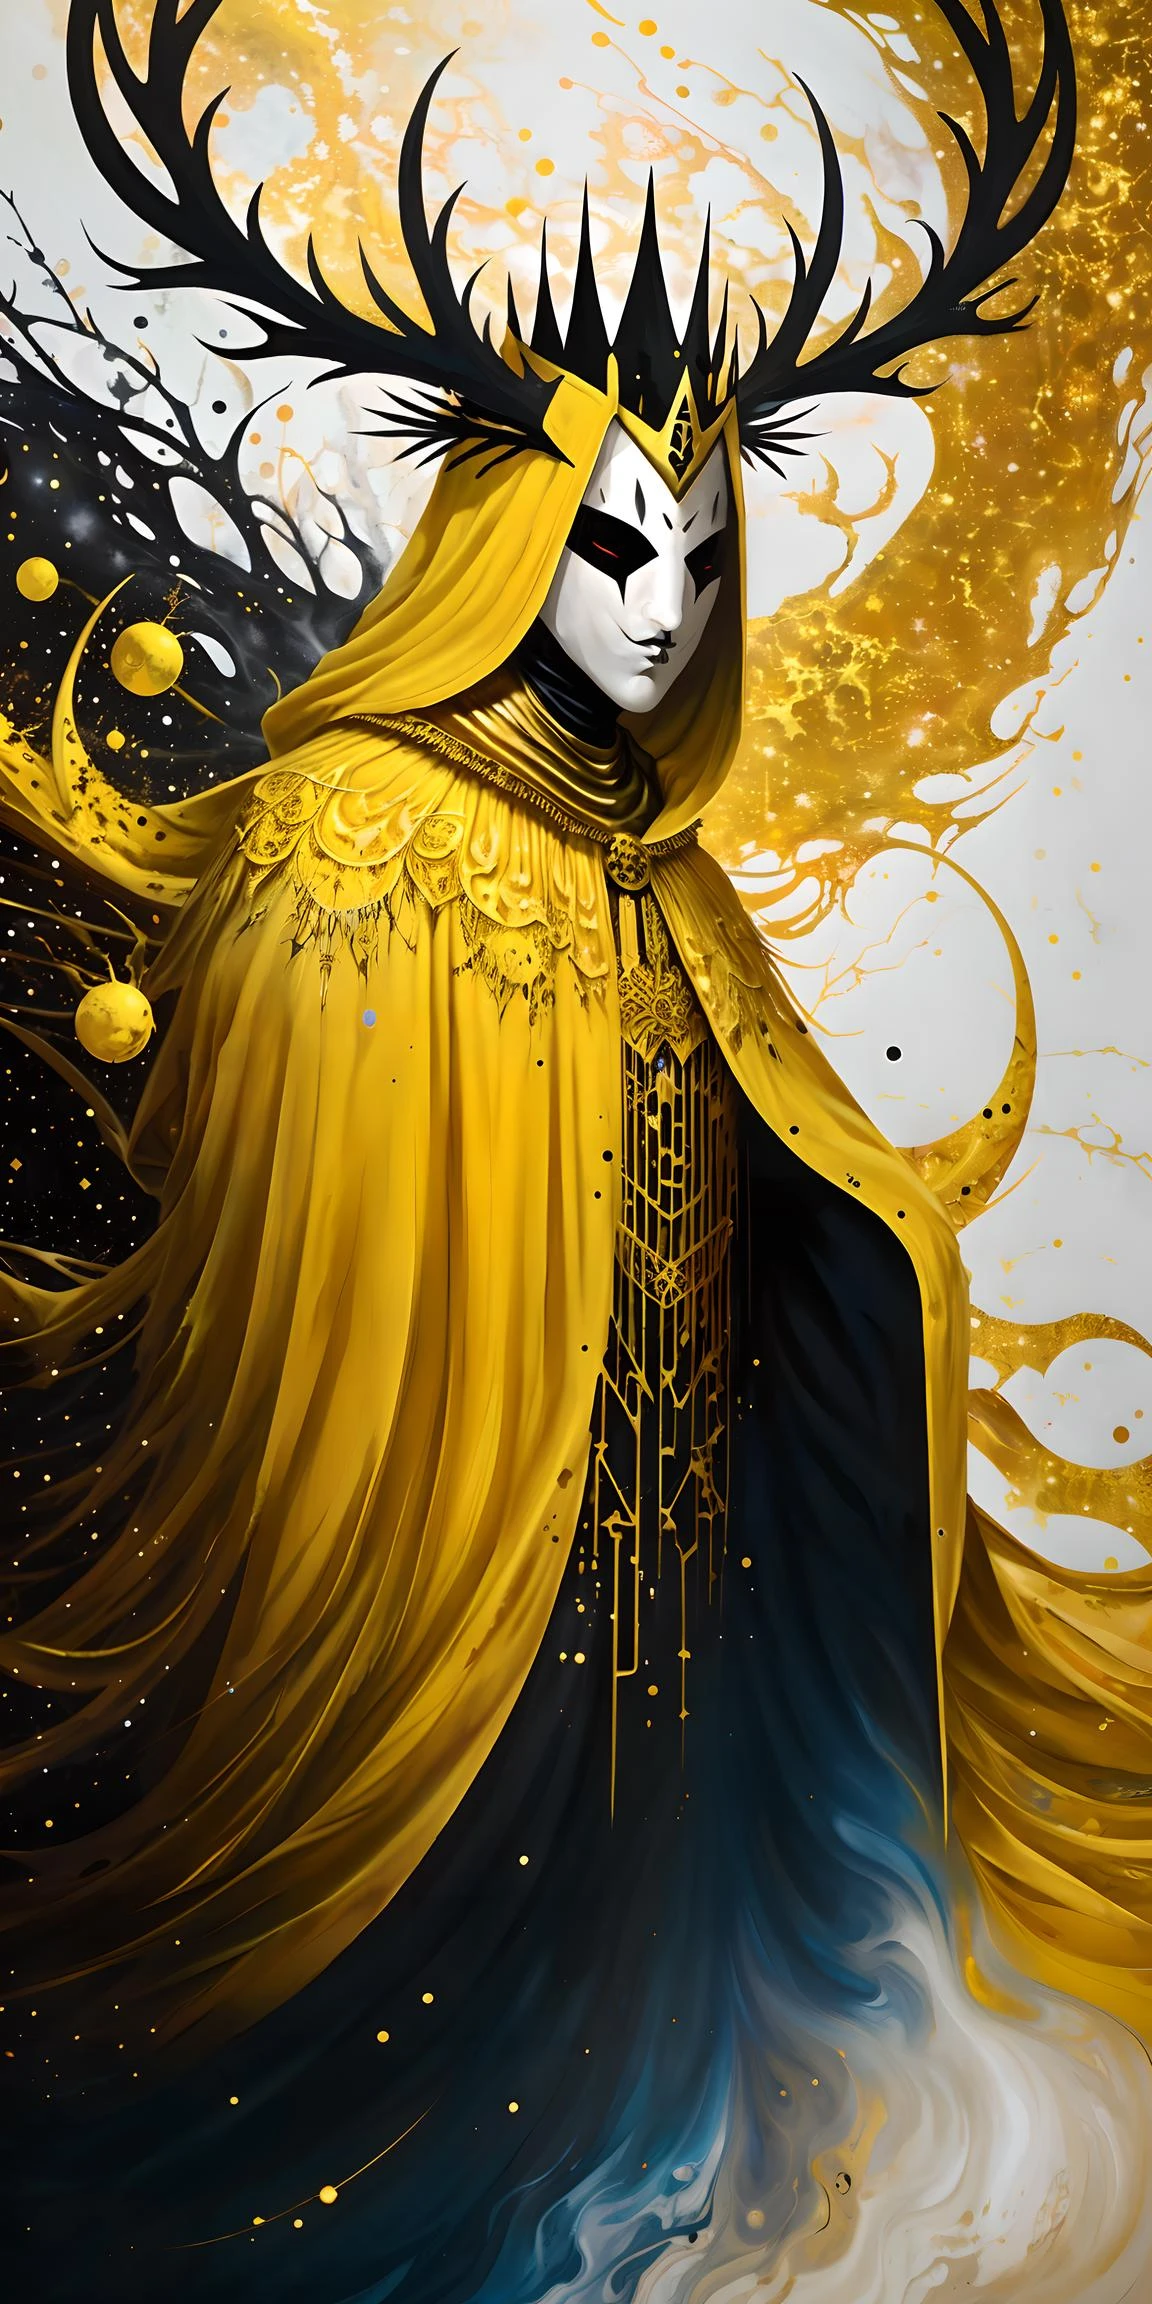 一幅超现实主义的泼墨画，画中国王身披斗篷，戴着面具, 鹿角, 王冠, 宇宙背景, 金色、白色和黑色的配色方案, (抽象的:1.2) 